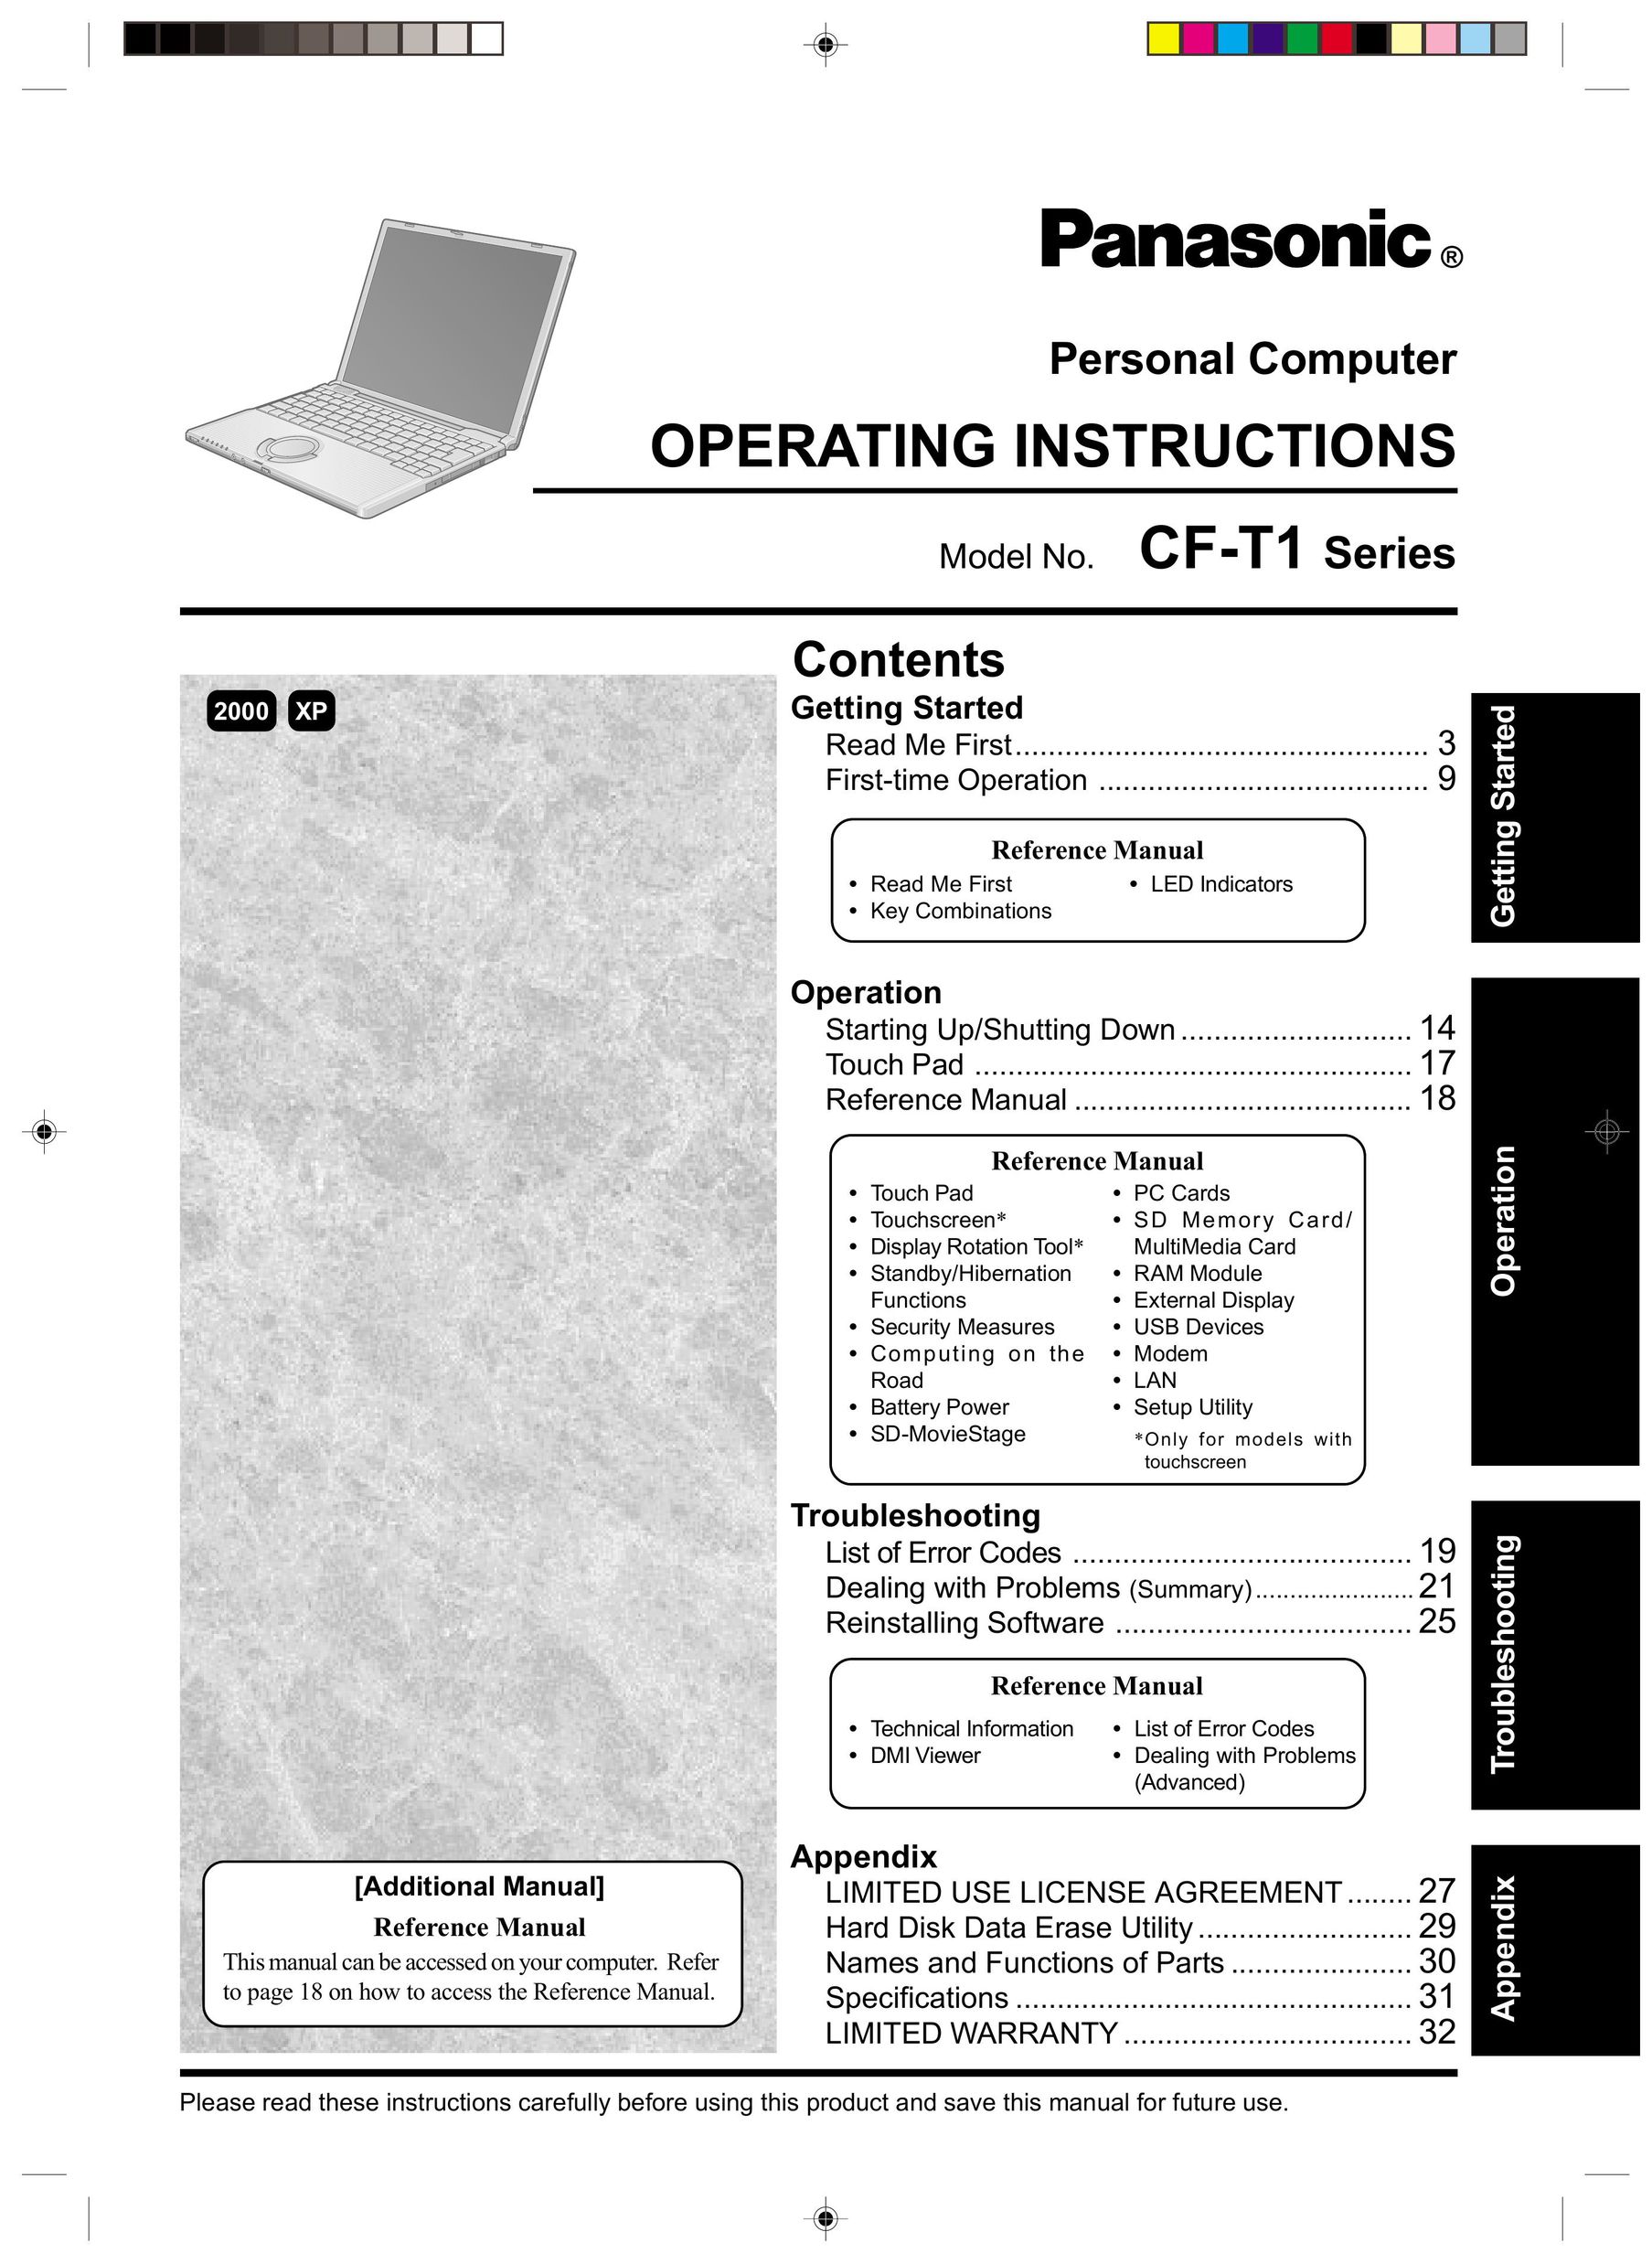 Panasonic CF-T1 Personal Computer User Manual